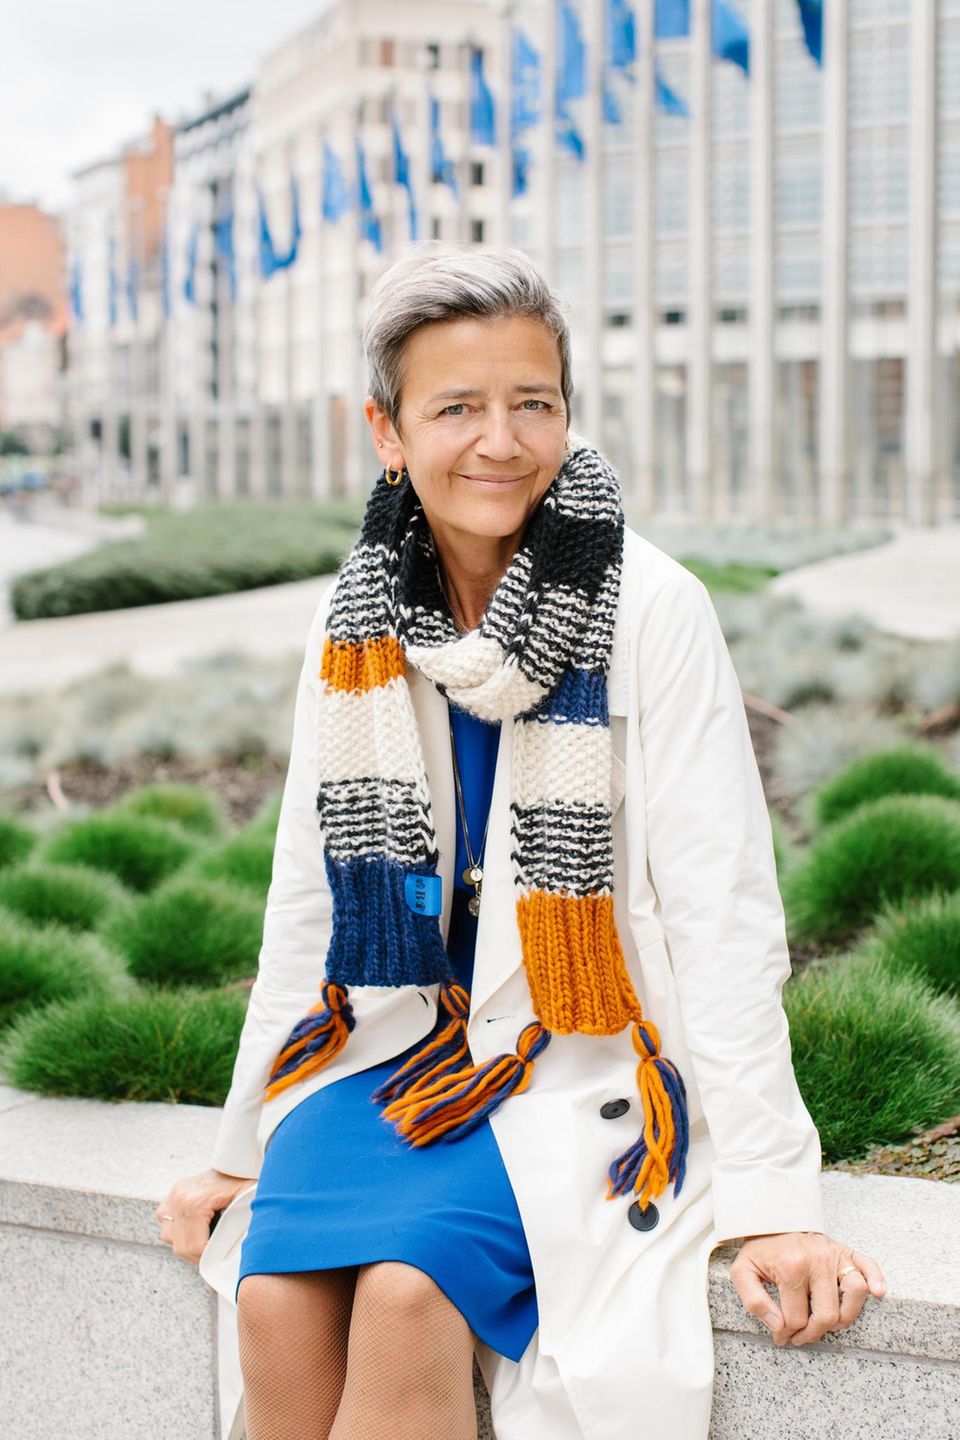 Promis bei "Ein Schal fürs Leben 2021": Margrethe Vestager